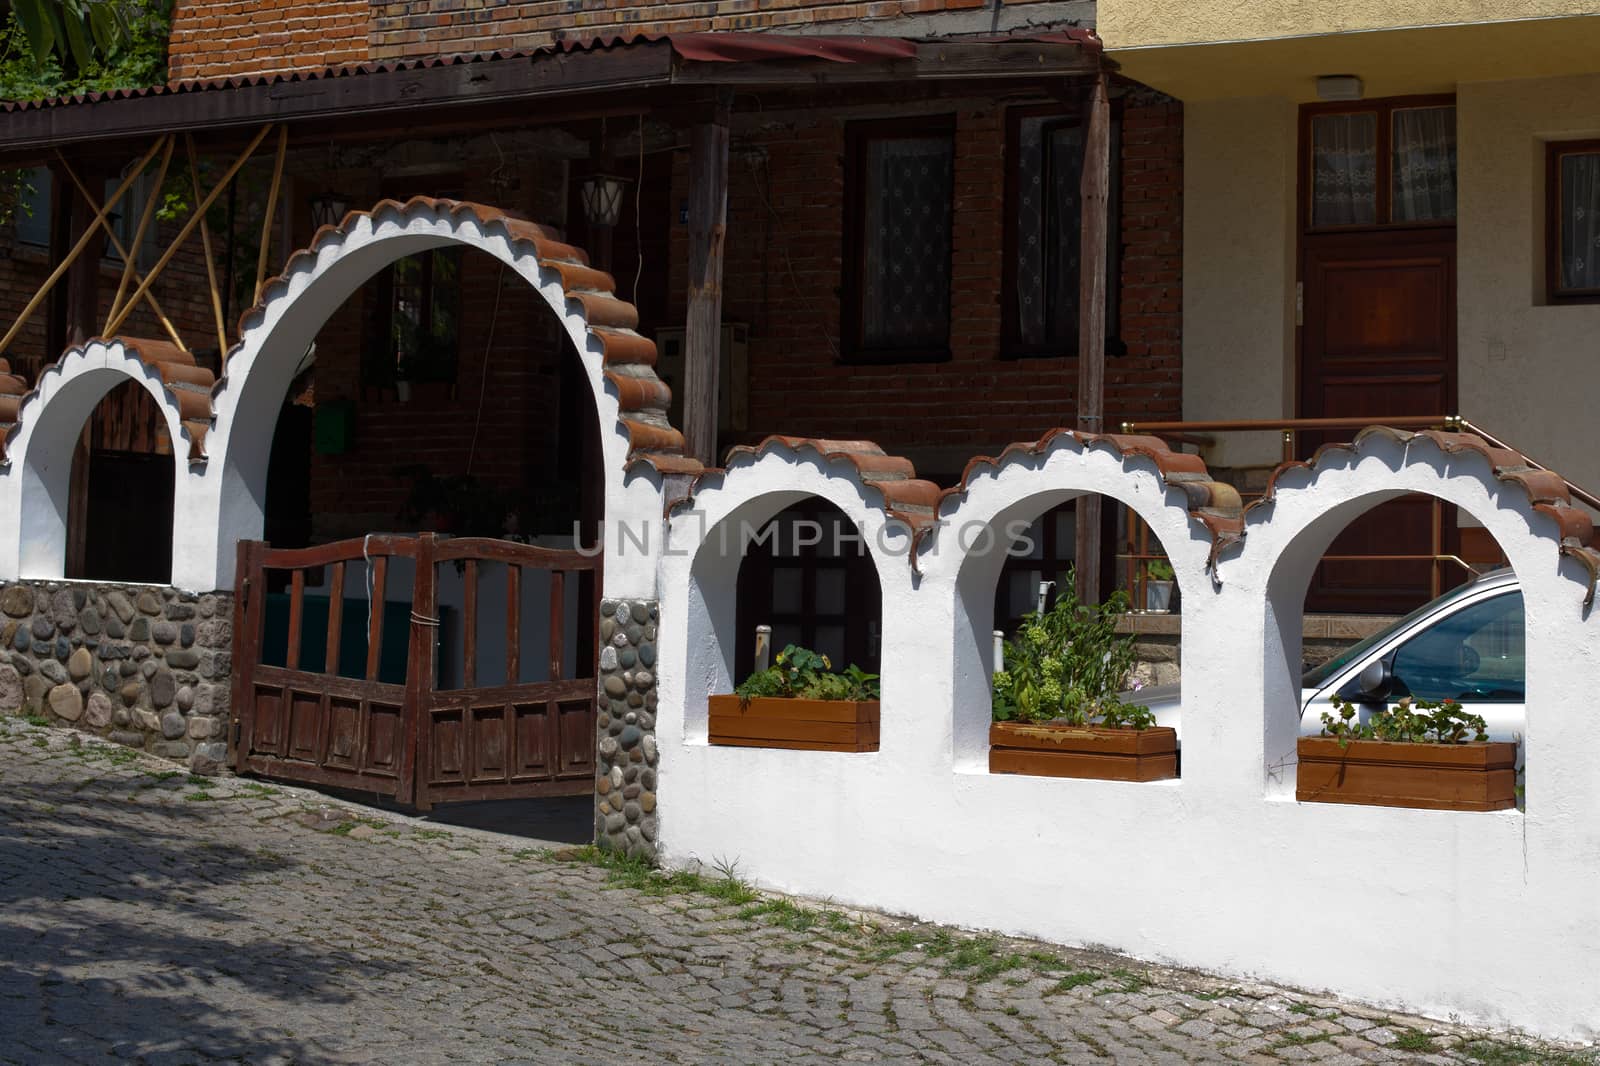 Small street in old town in Sozopol in Bulgaria
